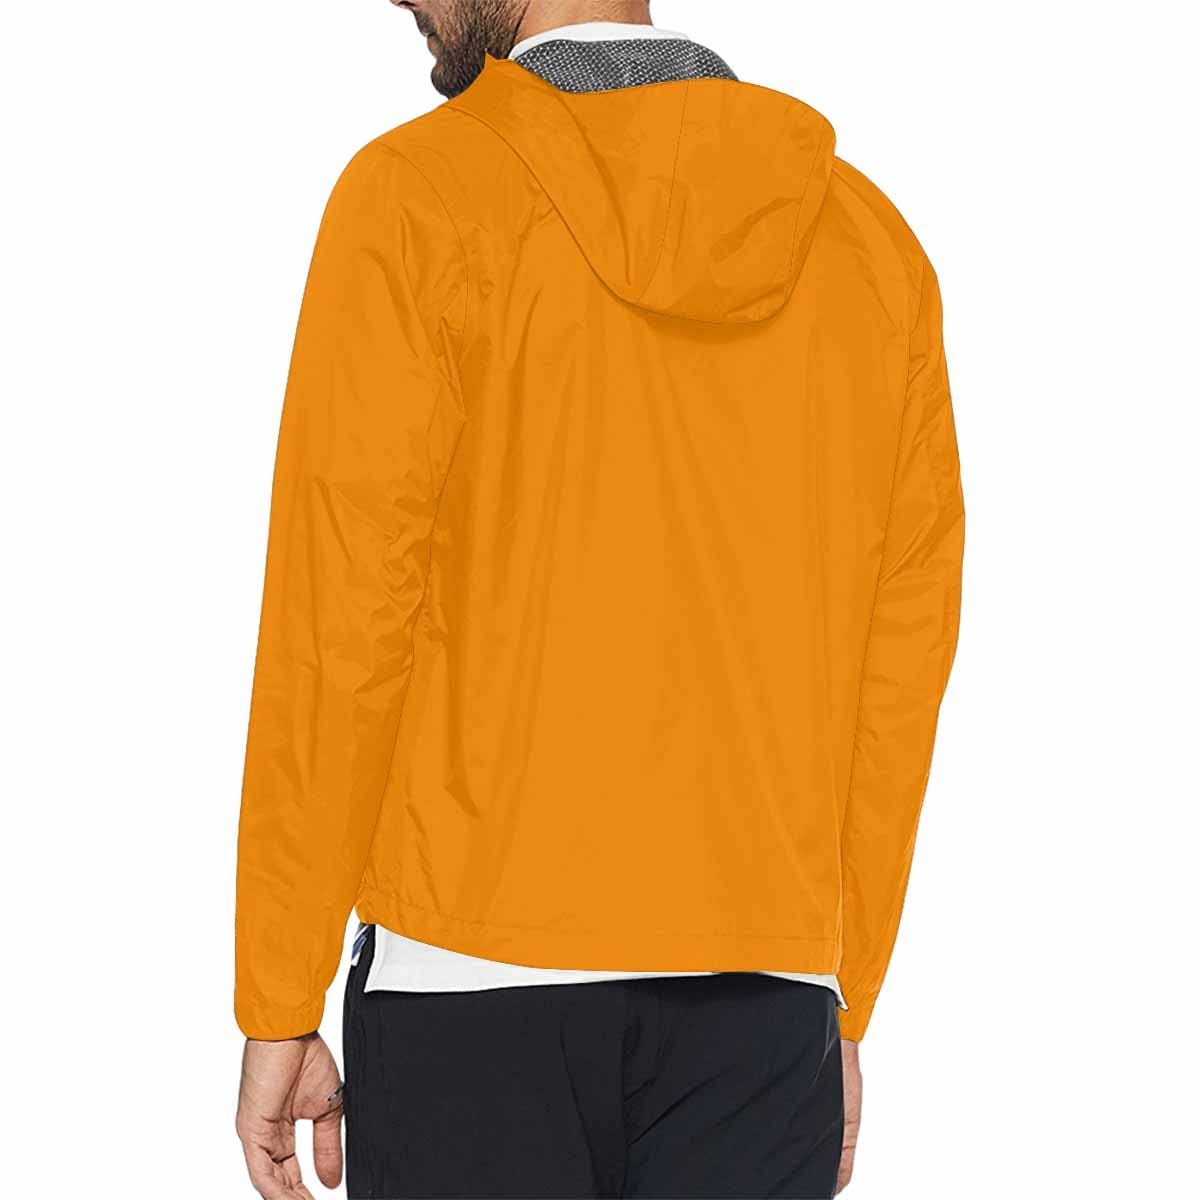 Tangerine Orange Hooded Windbreaker Jacket - Men / Women - Mens | Jackets